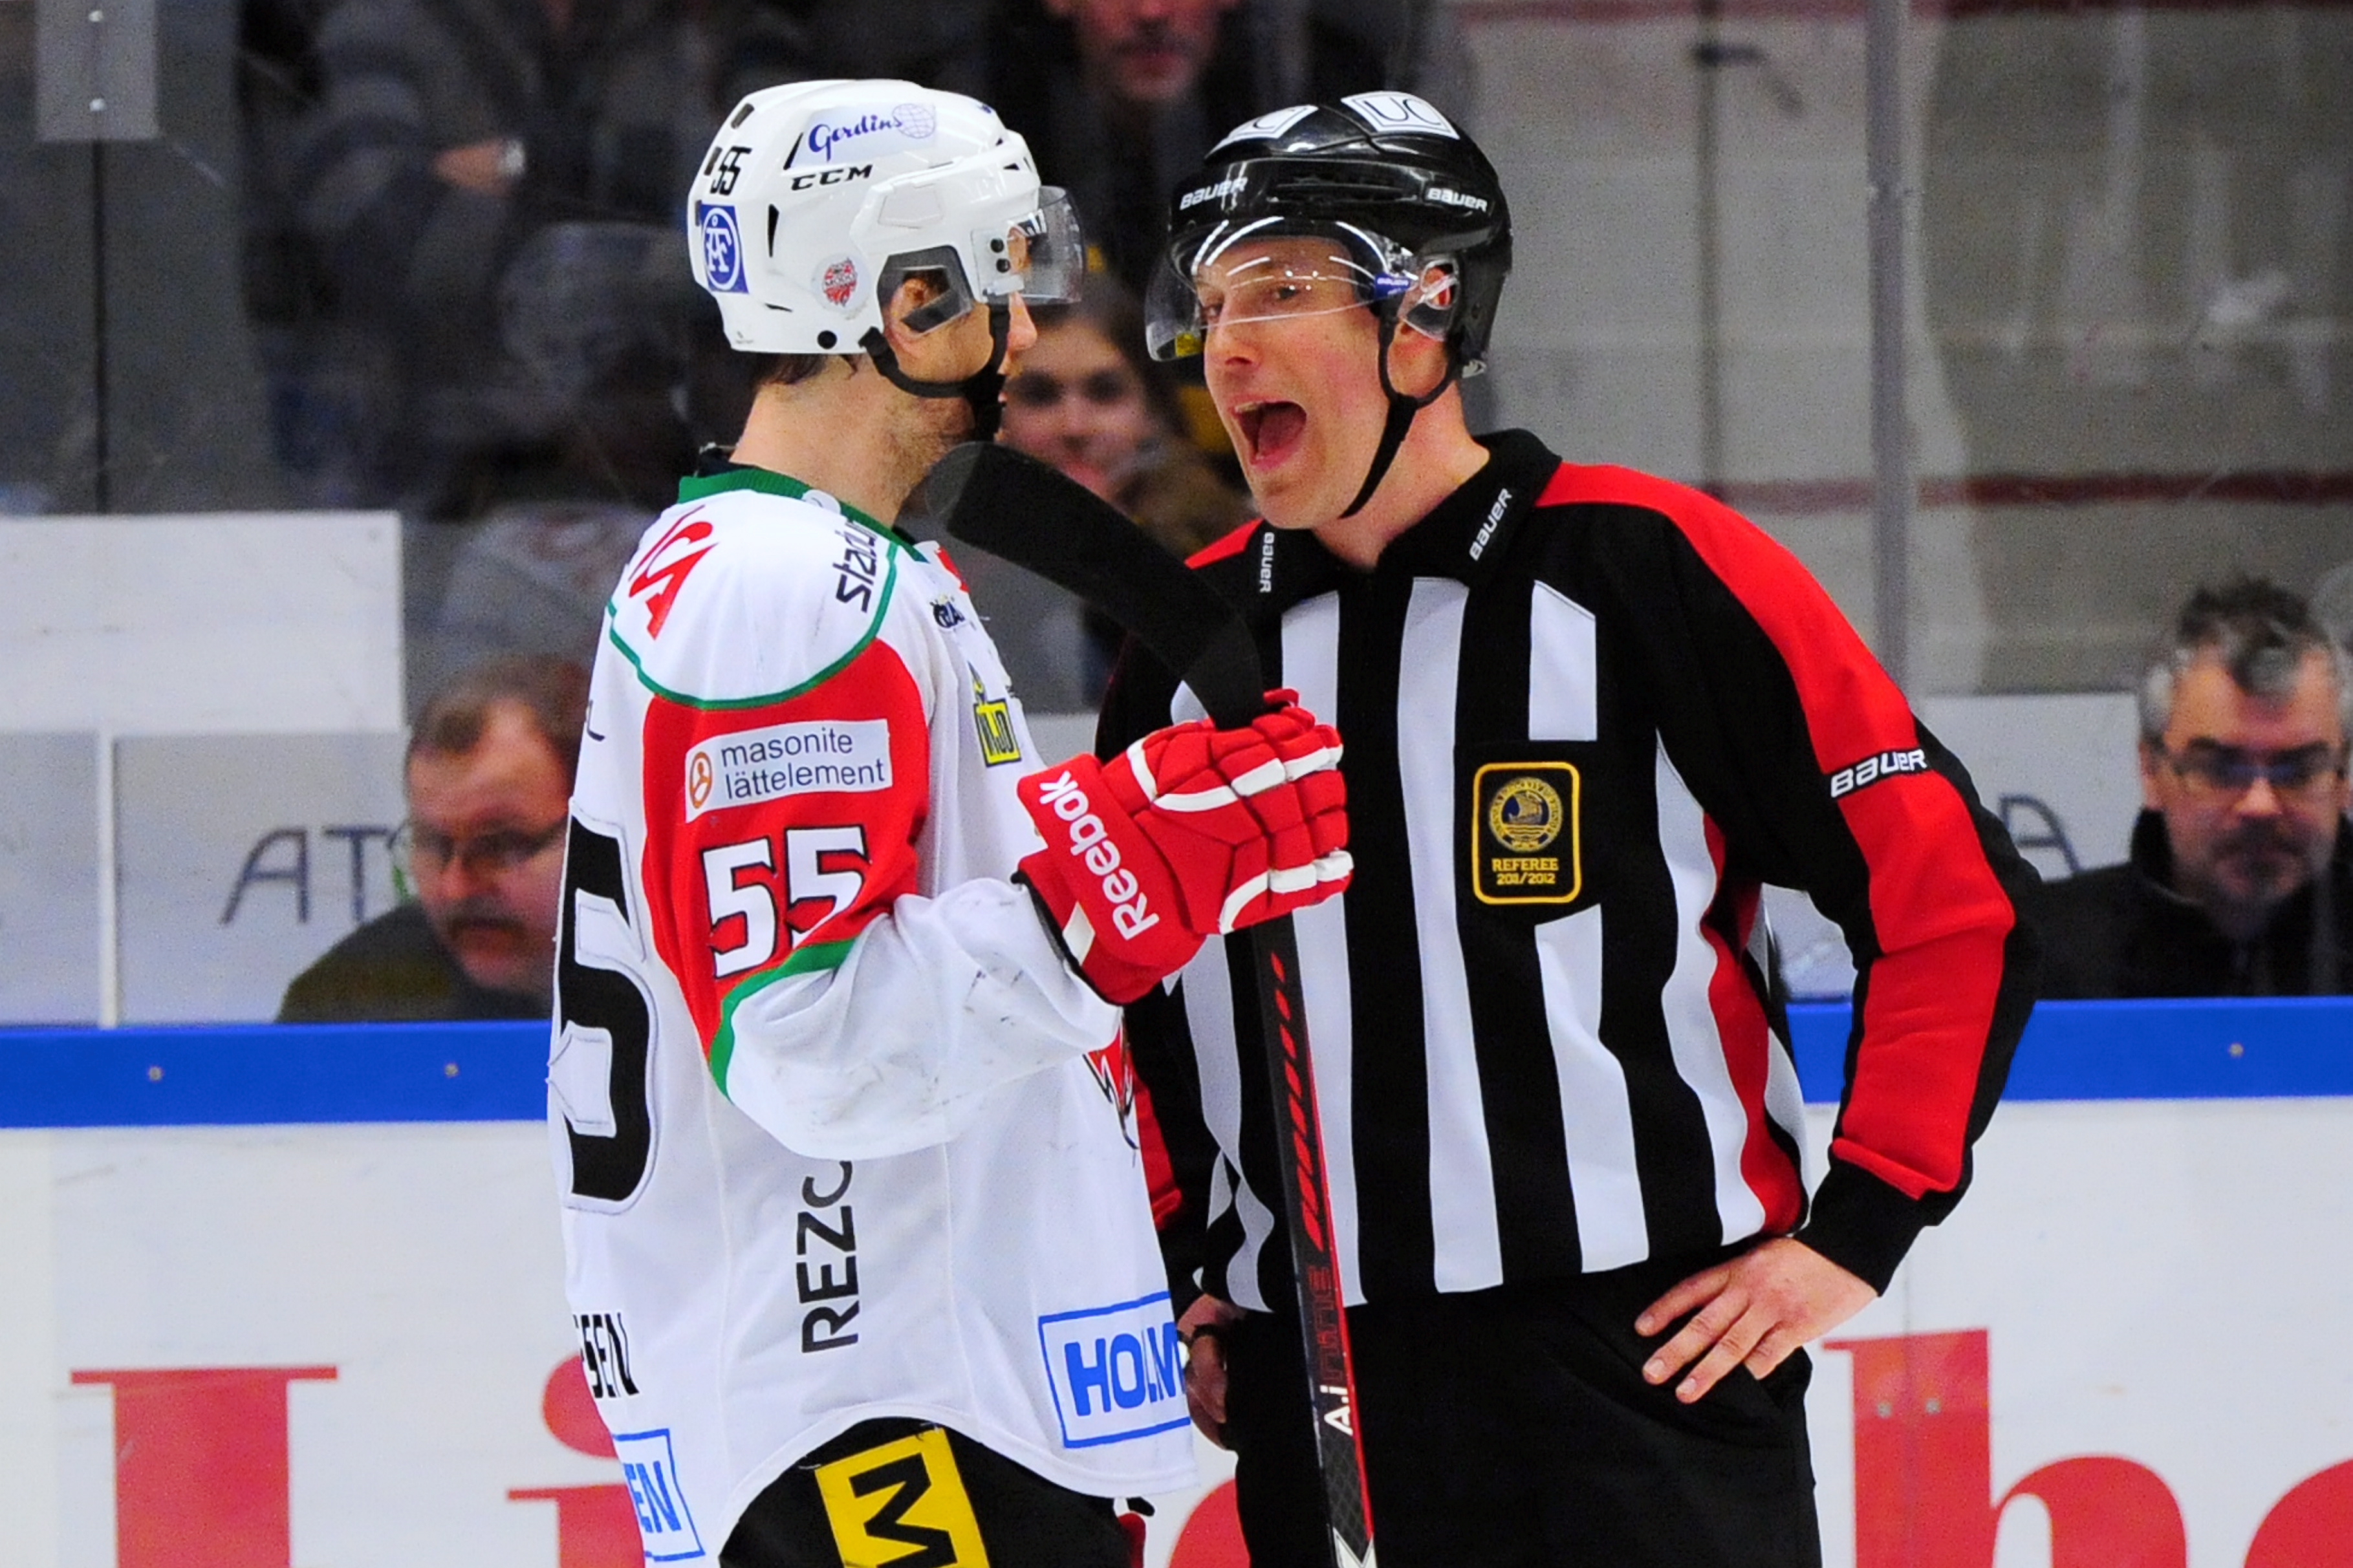 Modo-kaptenen Ole-Kristian Tollefsen var arg på Jimmie Ericsson flera gånger. – Han får tycka vad han vill om mig, säger Saik-kaptenen.